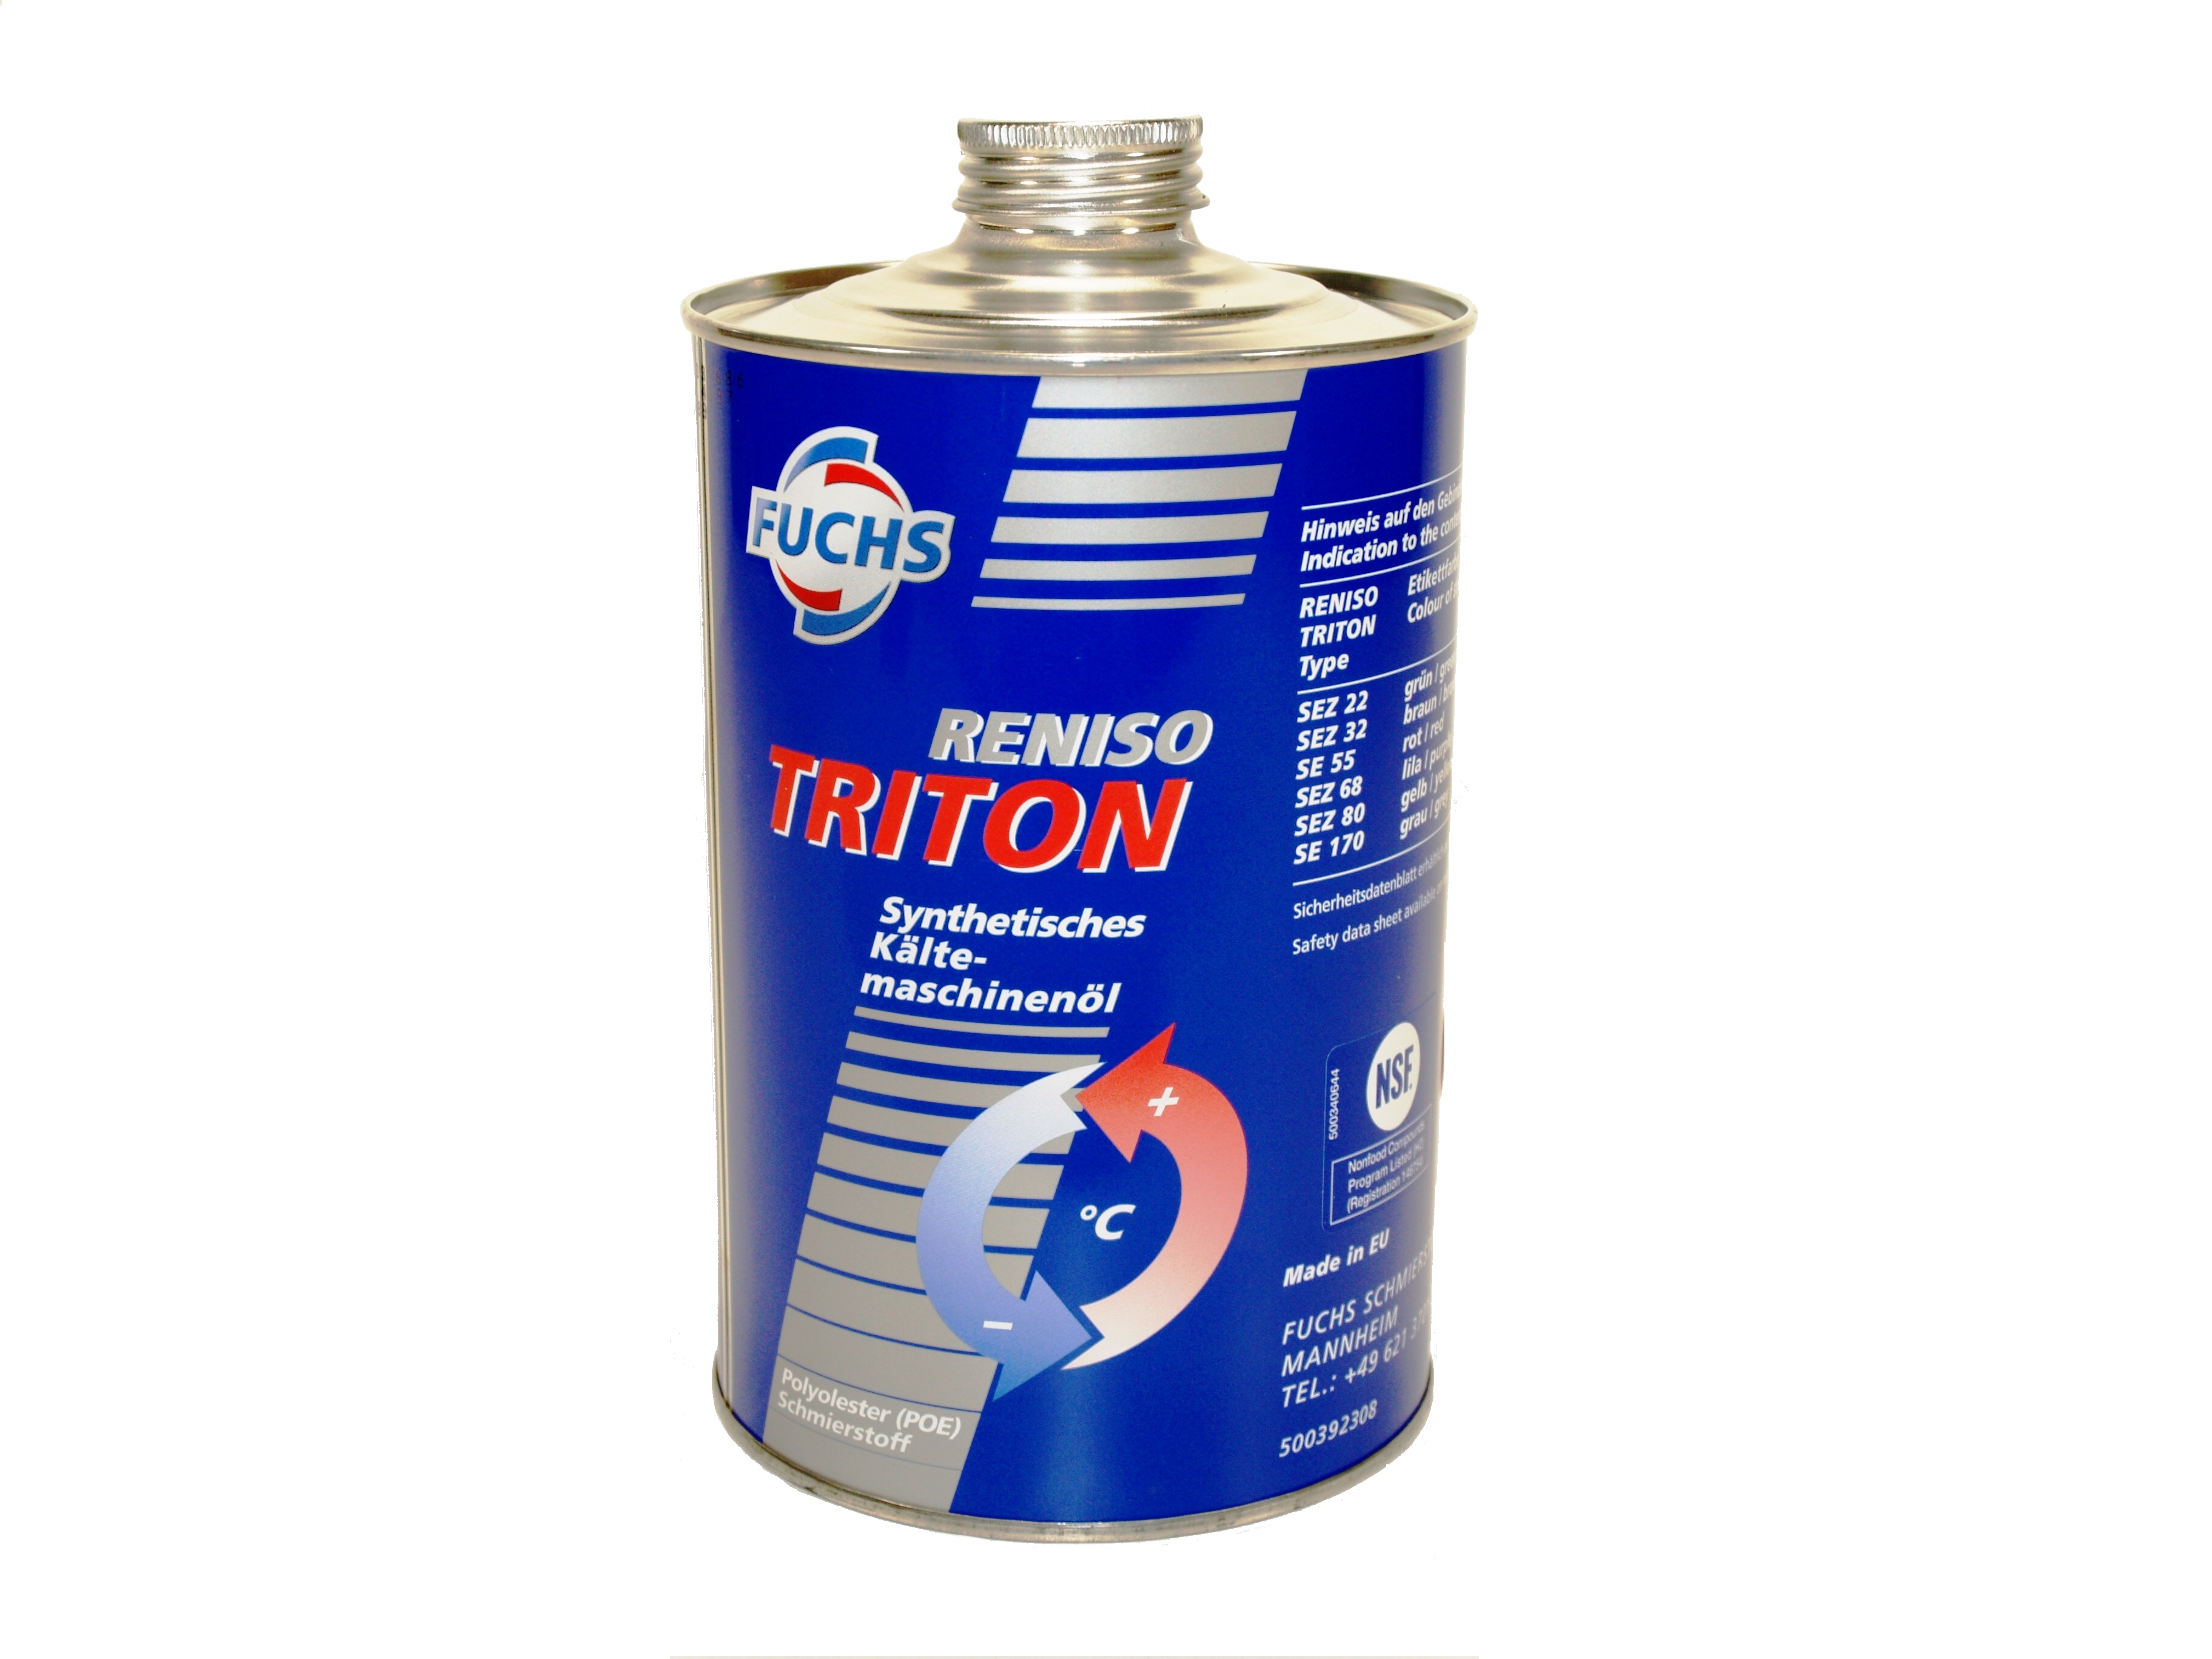 Kältemaschinenöl Triton SE55 1 Liter